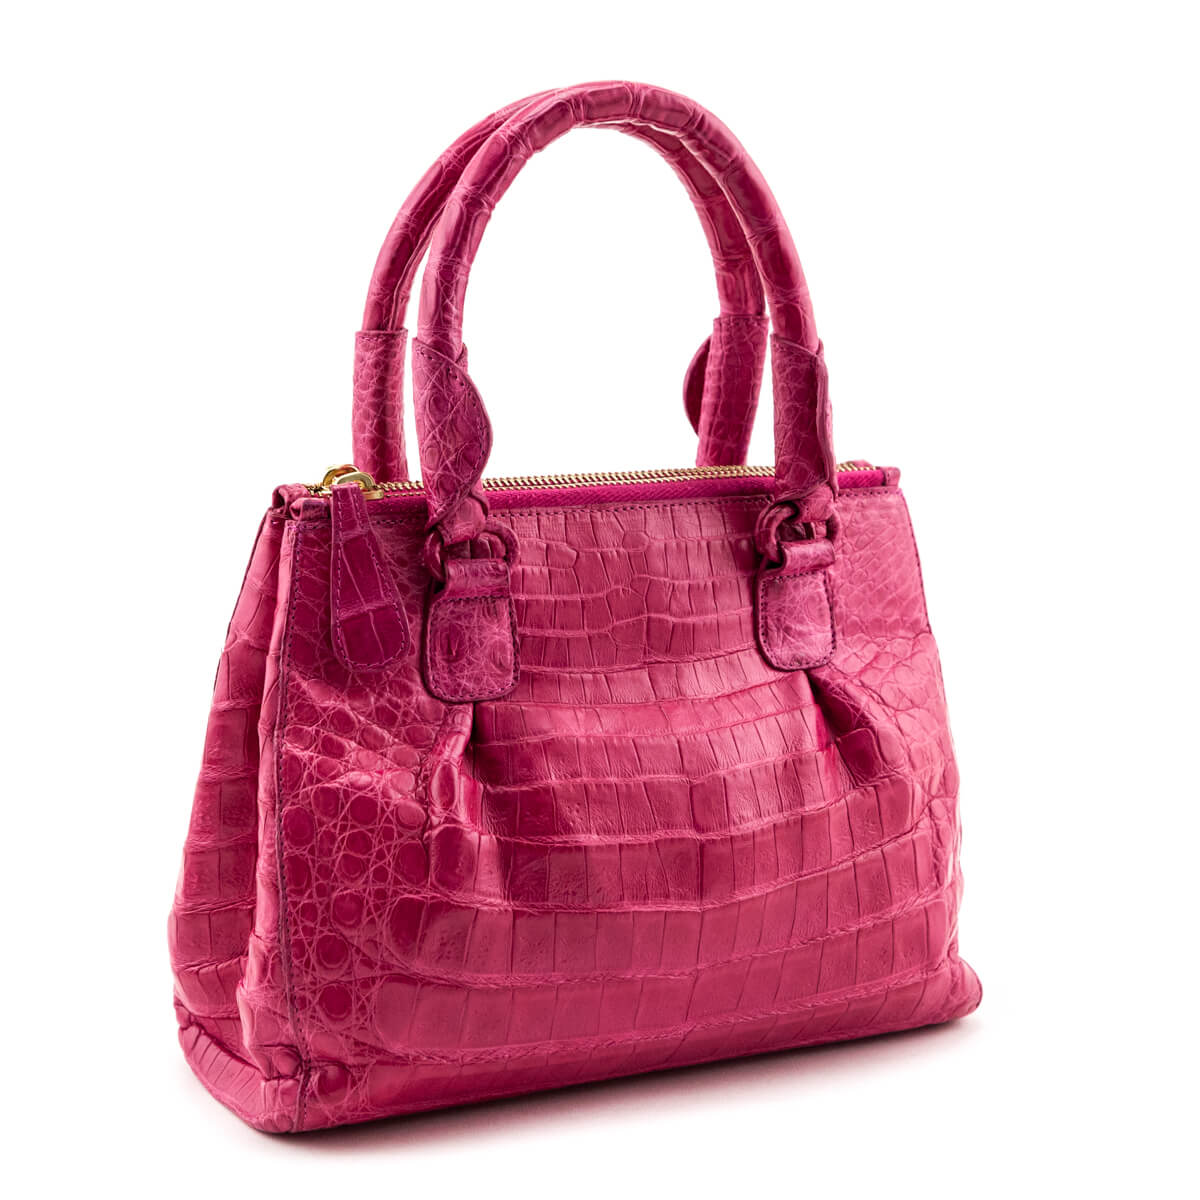 Authentic Designer Handbags | Shoes & Apparel | Bag Religion